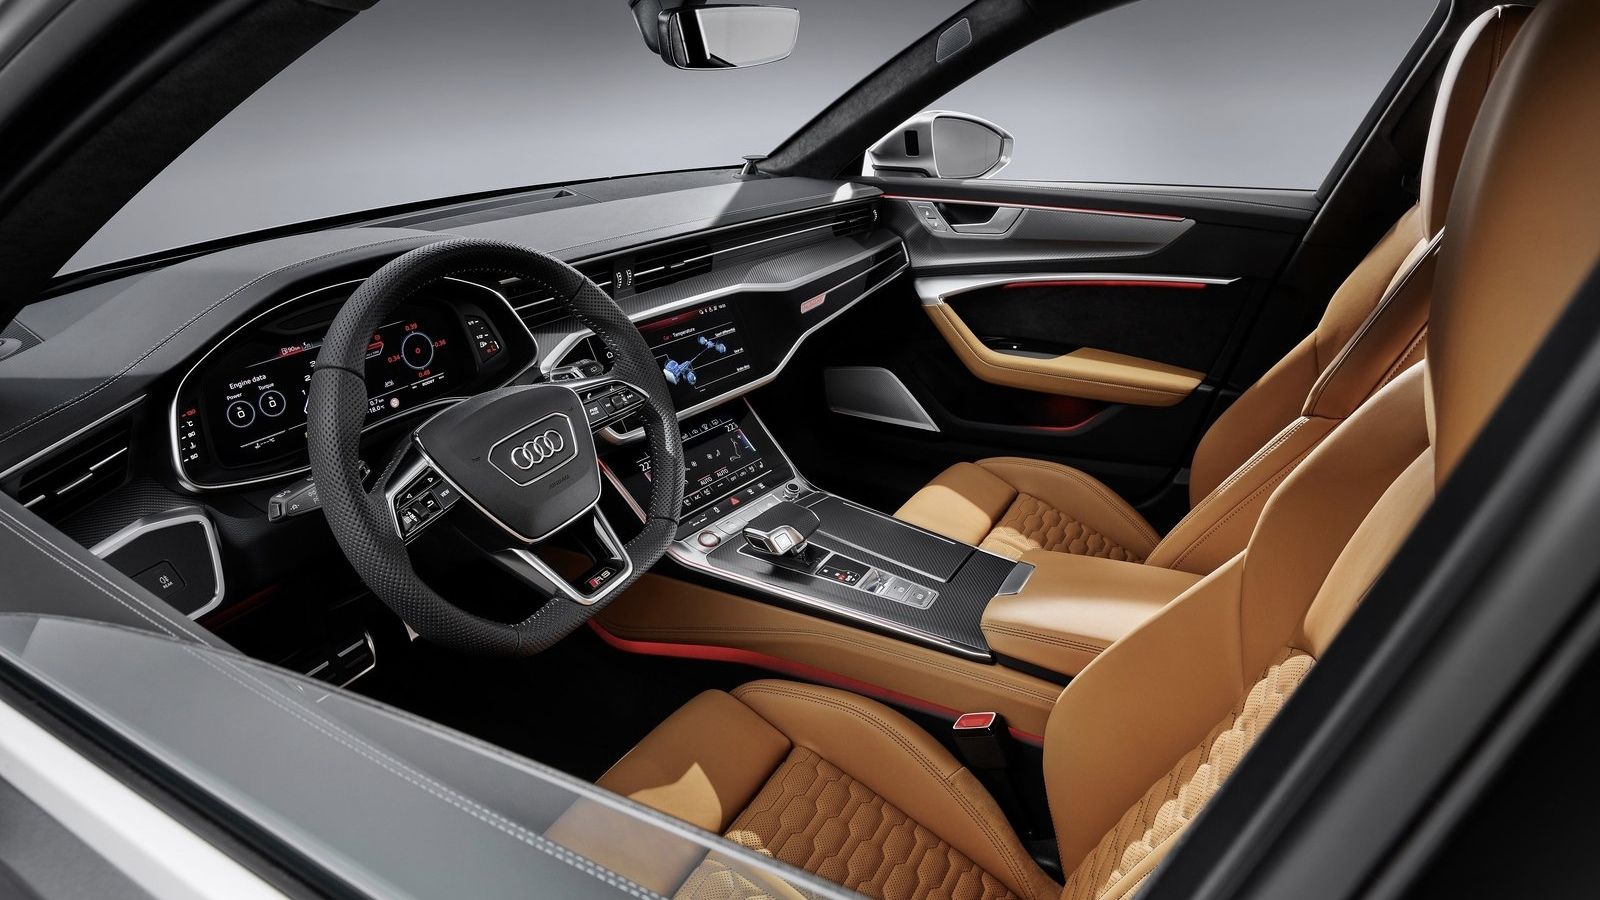 Kombi raketa Audi RS6 Avant dostáva úplne nový vzhľad a techniku